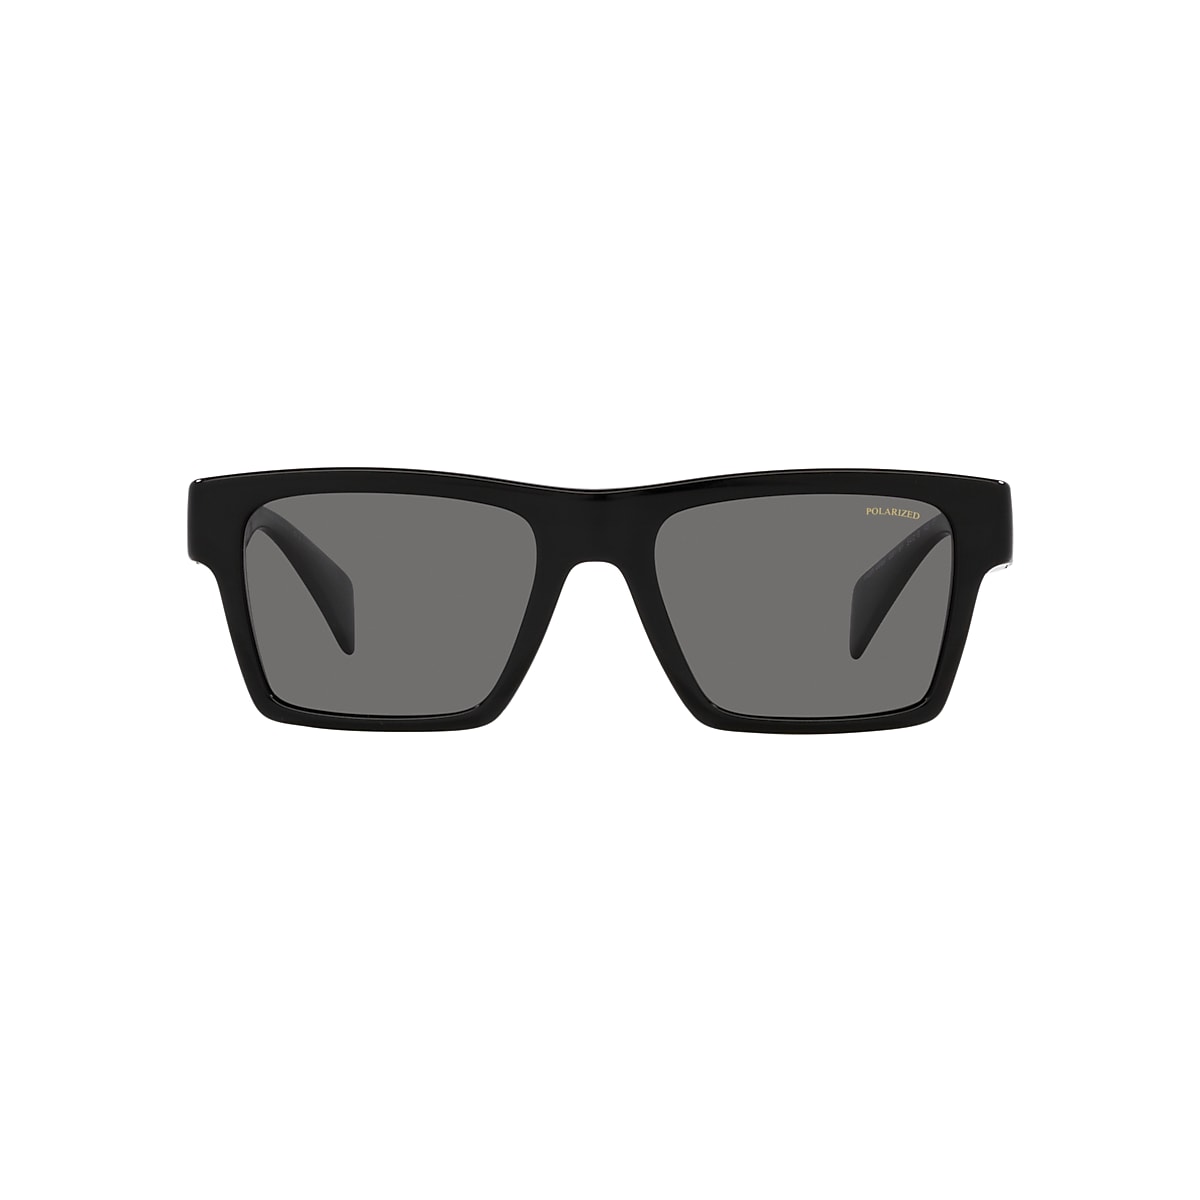 VERSACE VE4445 Black - Men Luxury Sunglasses, Polar Dark Grey Lens